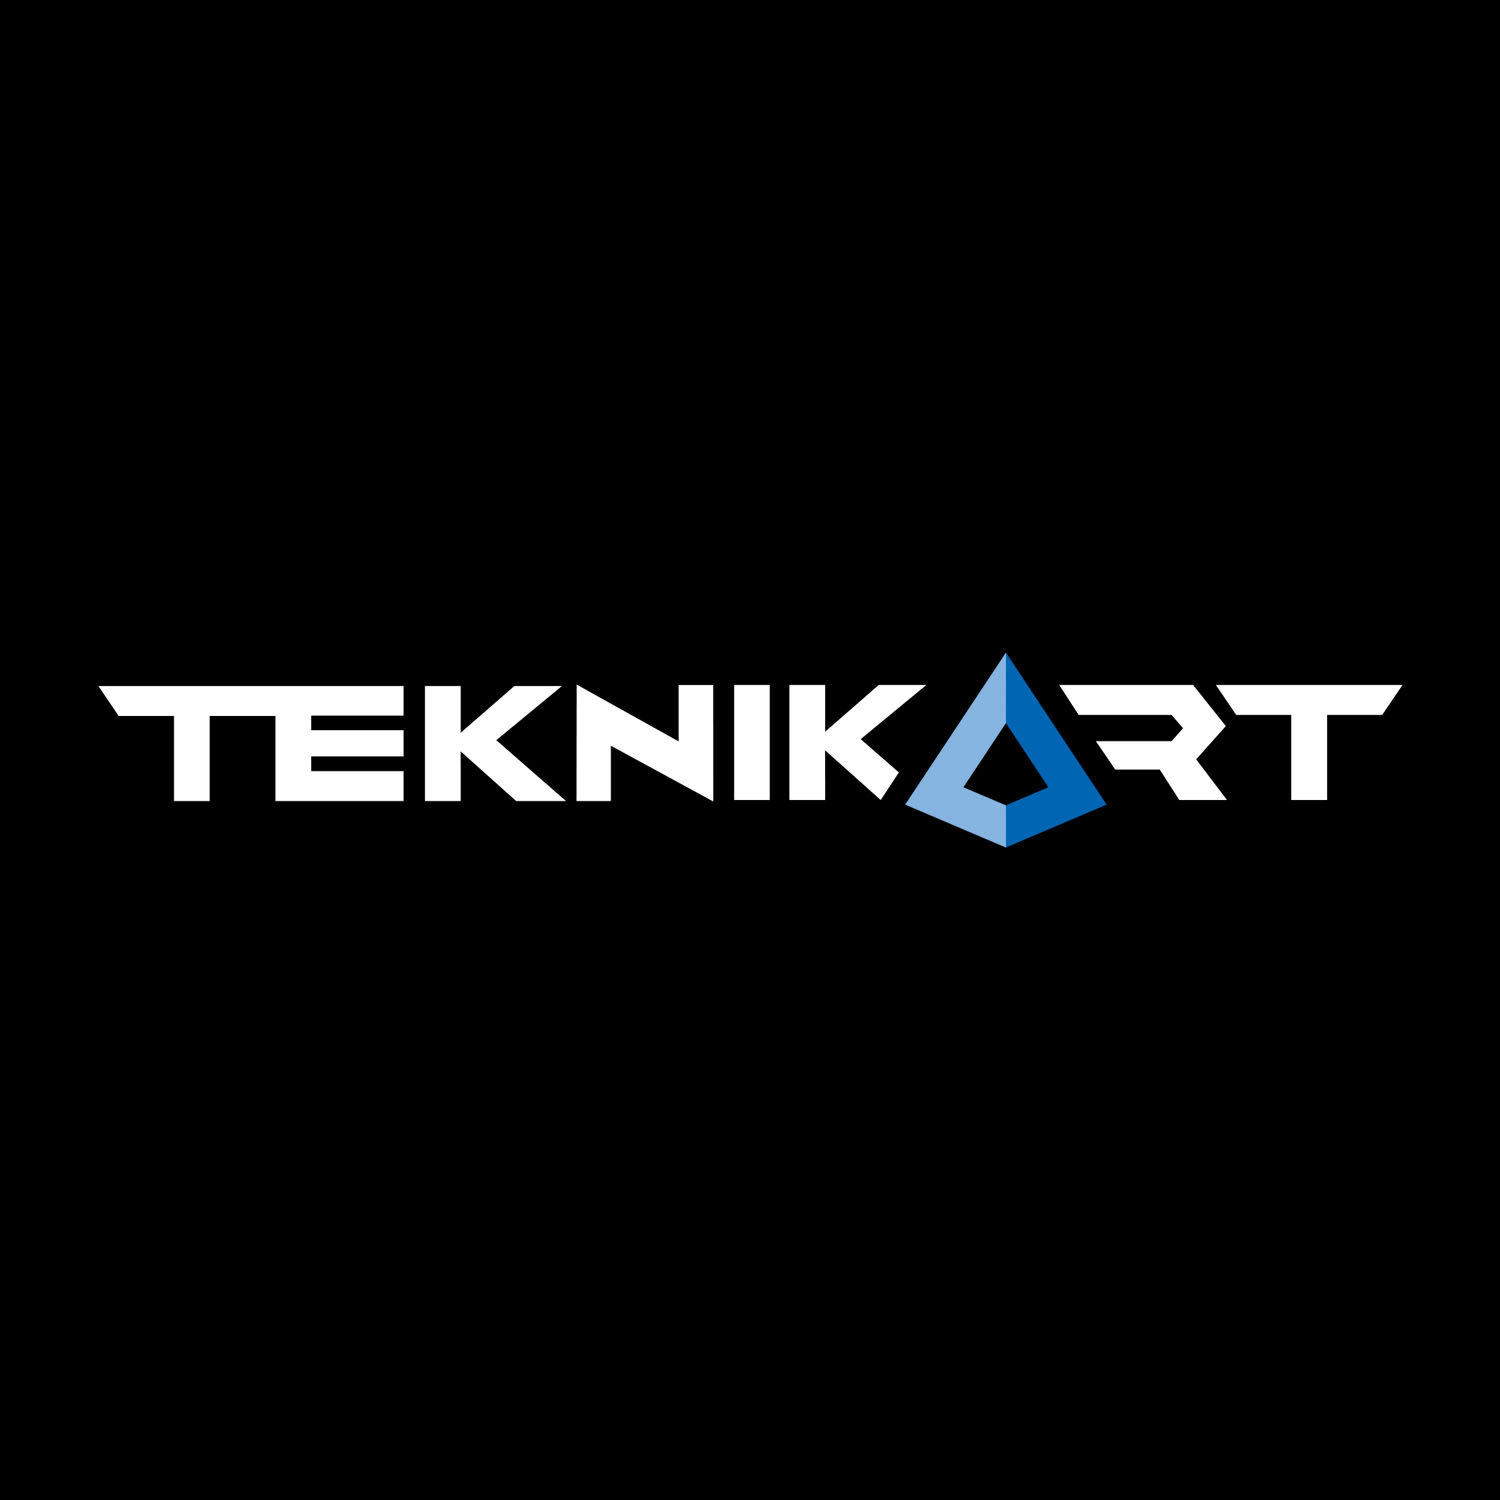 Logo, Teknikart, made by Therwiz Design